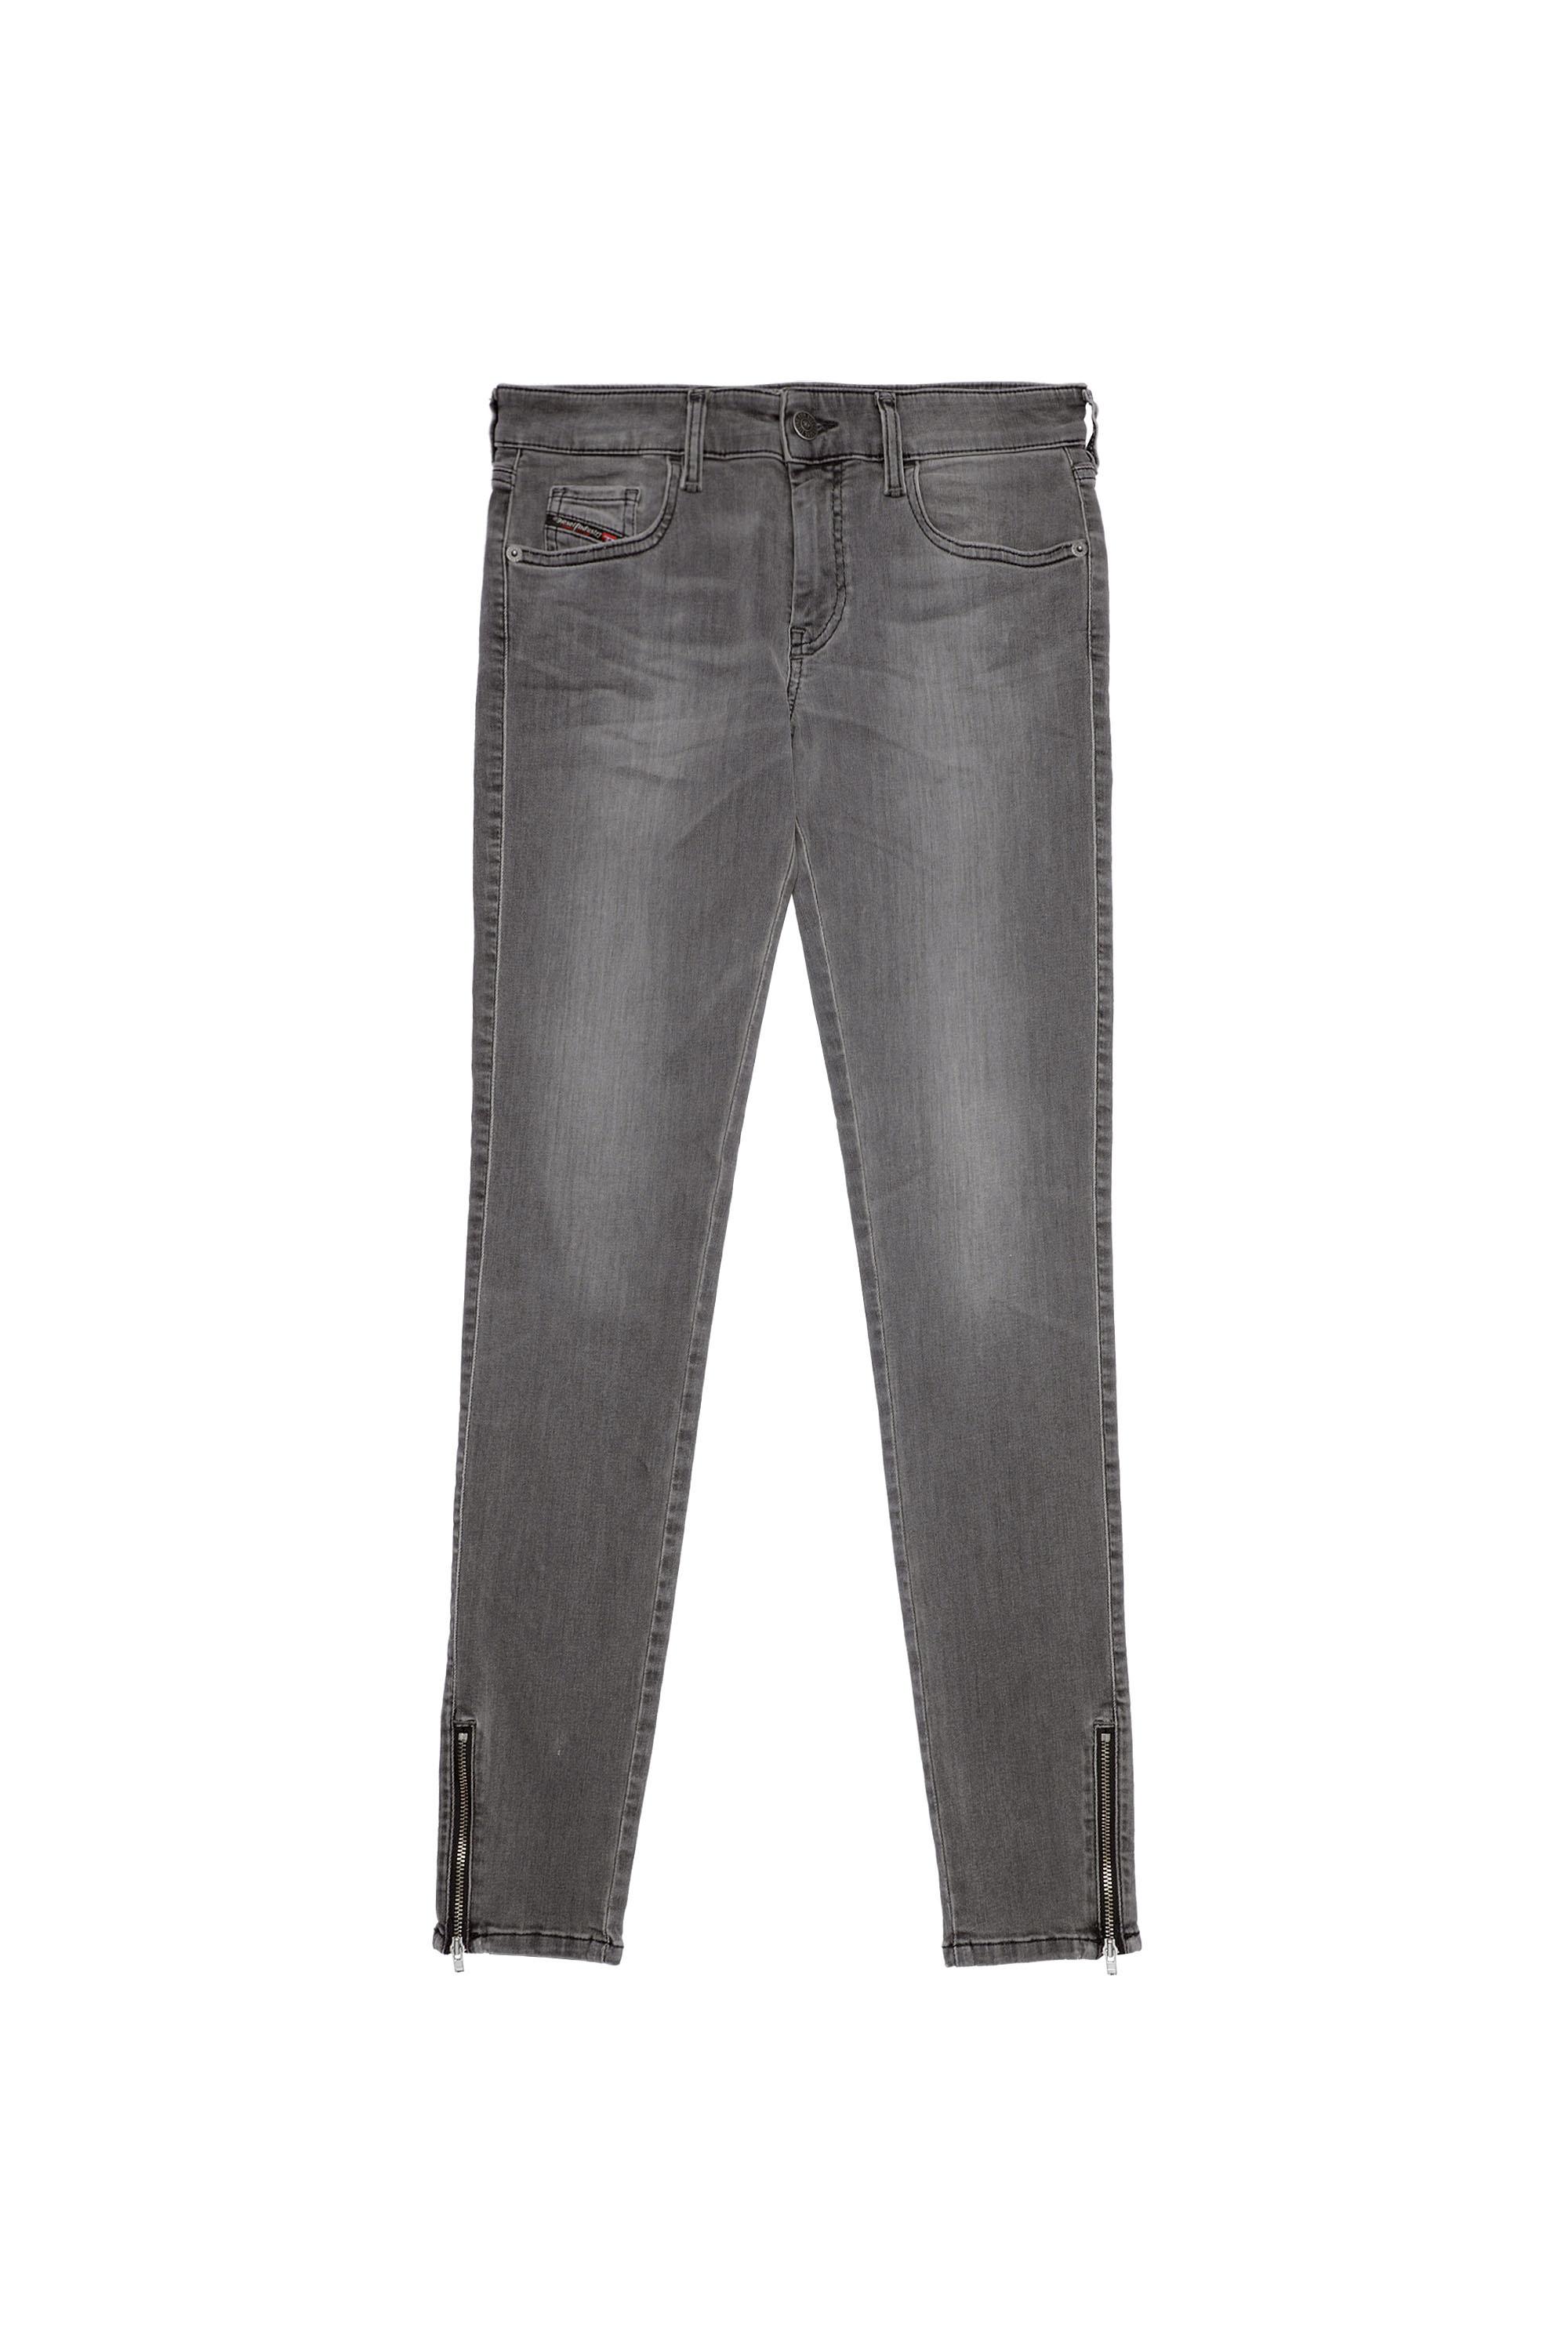 Diesel - Slandy Low Skinny Jeans 069XW, Black/Dark grey - Image 2